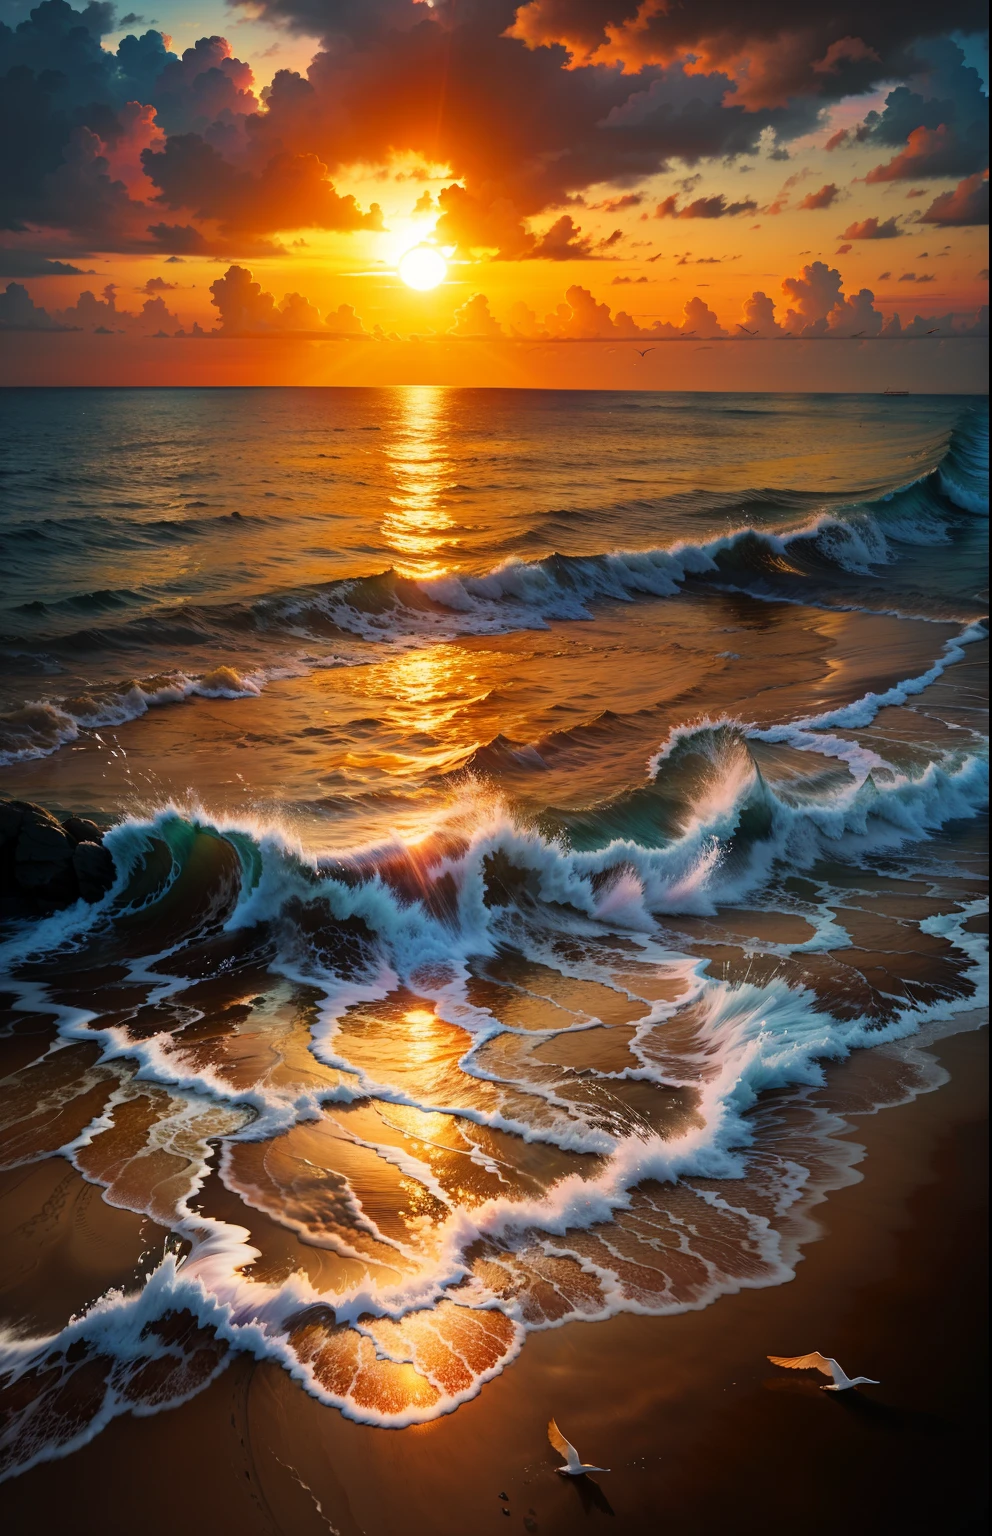 Um pôr do sol absolutamente hipnotizante sobre a praia, com uma mistura de laranjas, rosa, e amarelos enchendo o céu. Águas cristalinas do mar beijando suavemente a costa, com praia de areia branca que se estende por toda parte. A cena é dinâmica e de tirar o fôlego, com gaivotas voando alto no céu e palmeiras balançando suavemente. Aprecie a atmosfera calma e deixe a tranquilidade tomar conta de você.